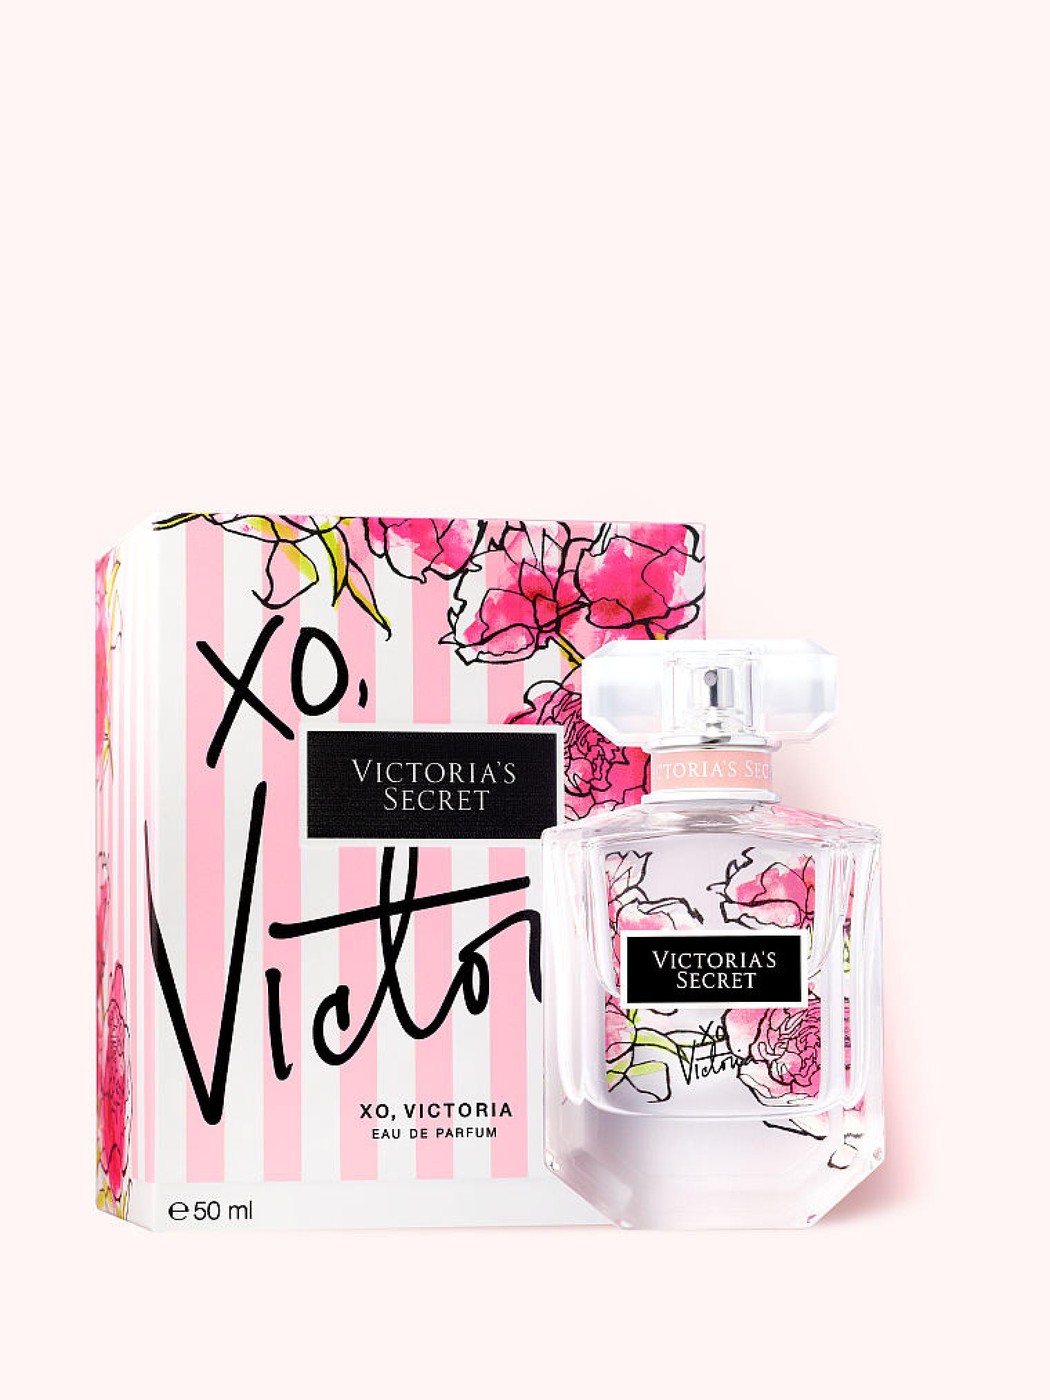 Парфюм Victoria's Secret XO, Victoria Eau de Parfum